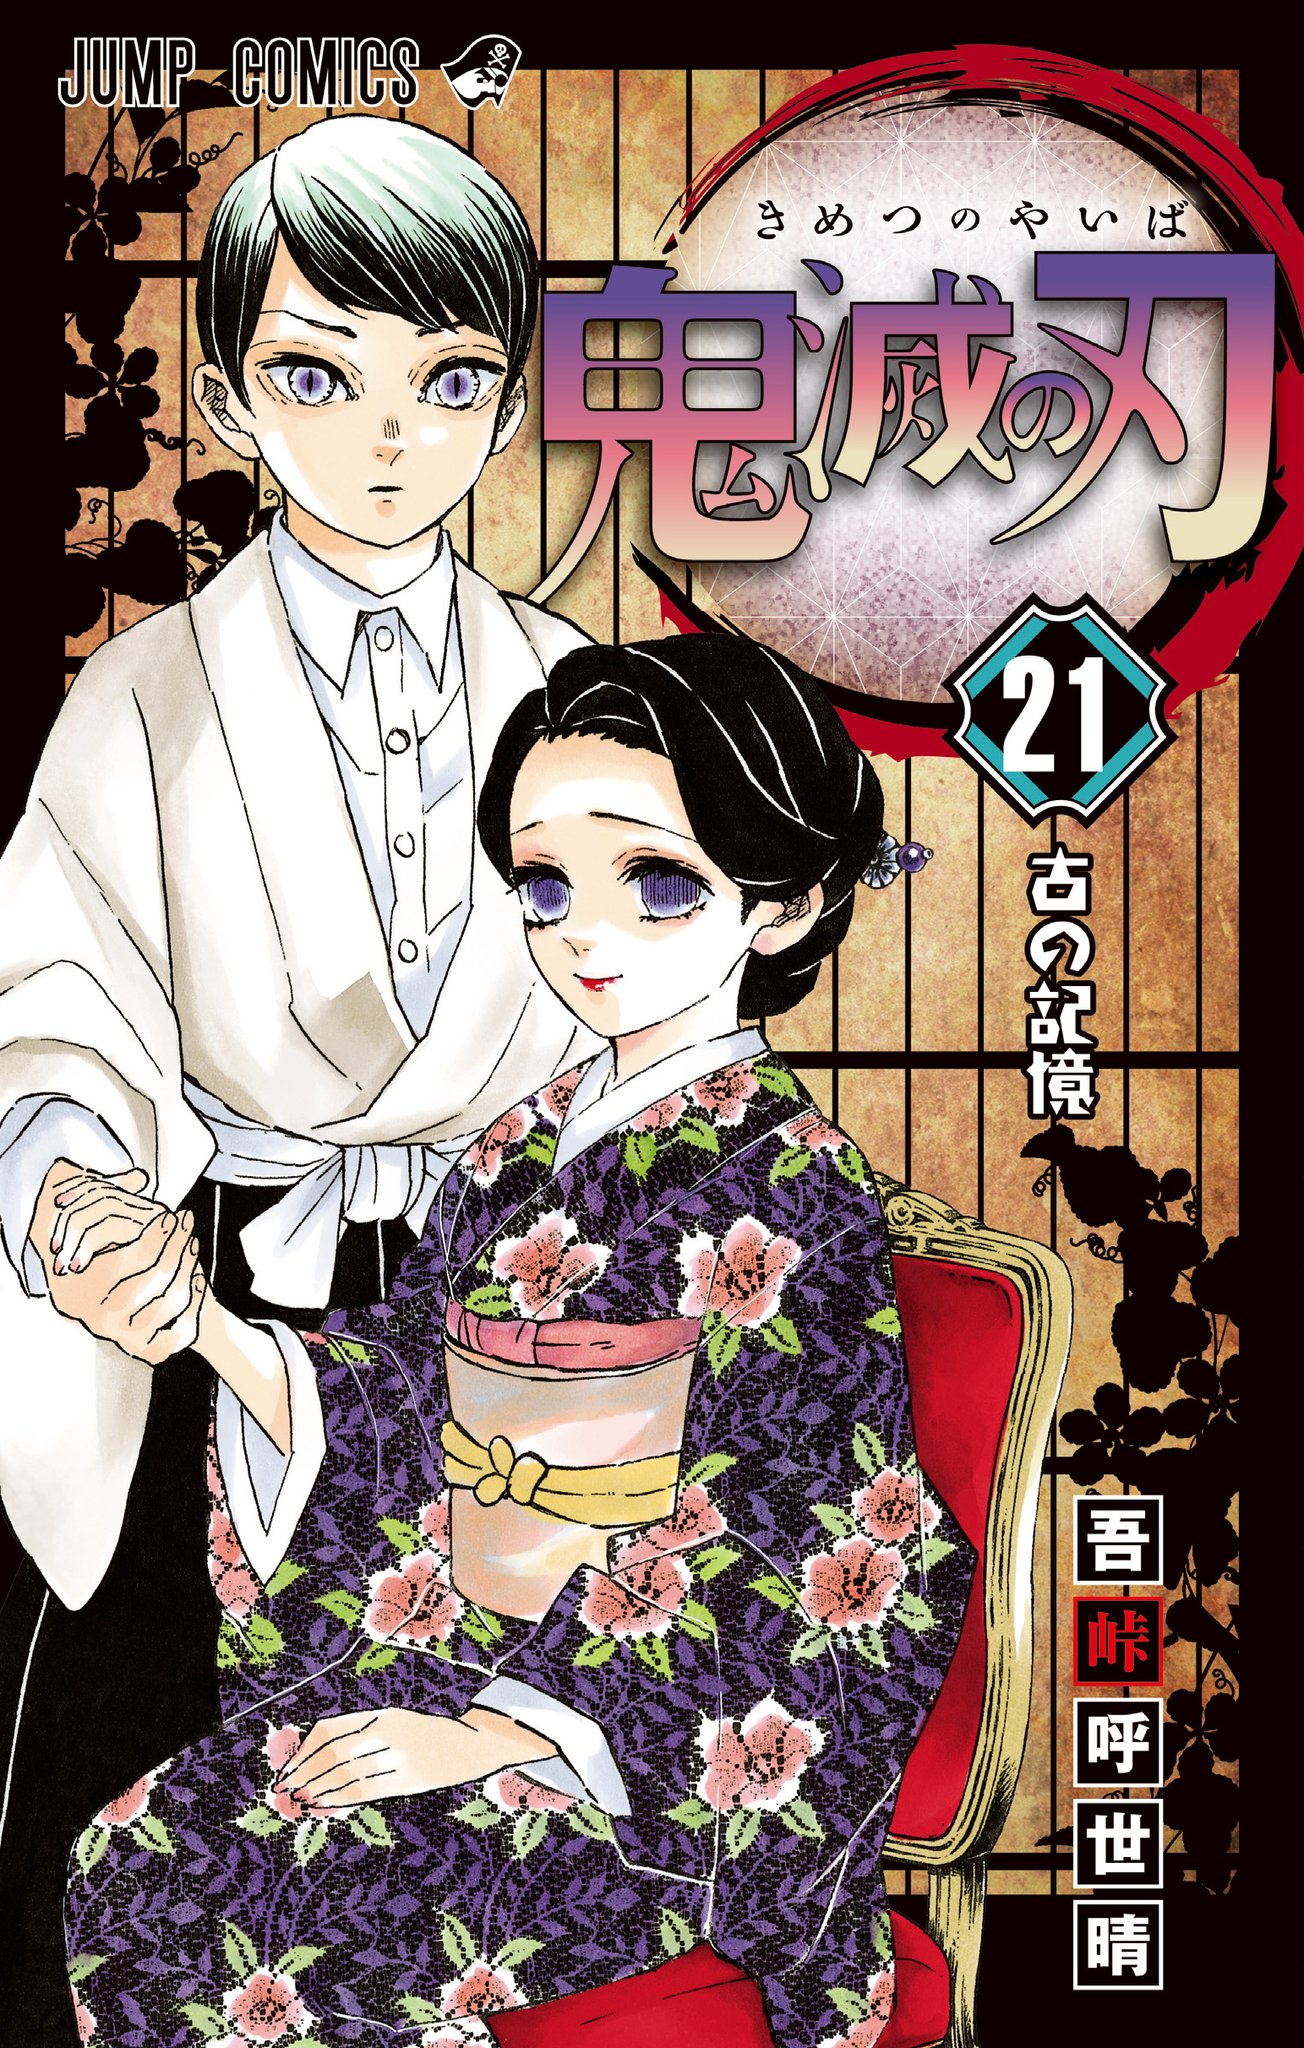 The Kimetsu No Yaiba Manga Reveals The Cover Of Its Volume 21 〜 Anime